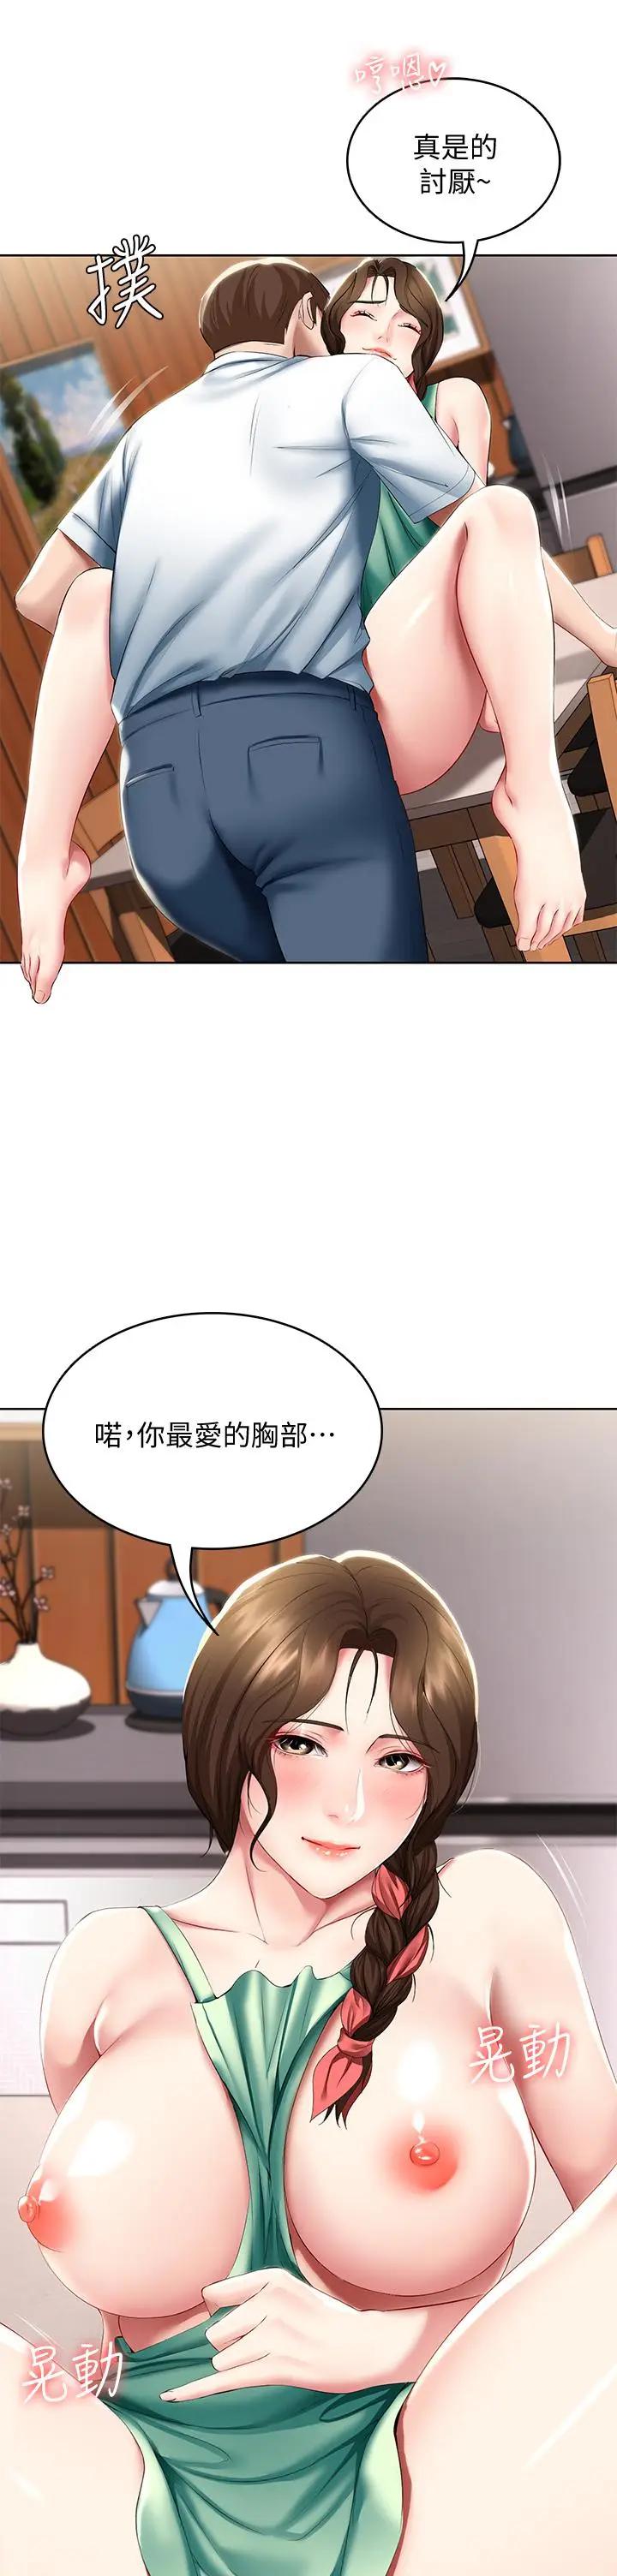 韩国污漫画 寄宿日記 第56话妖艳美静的特别服务 17